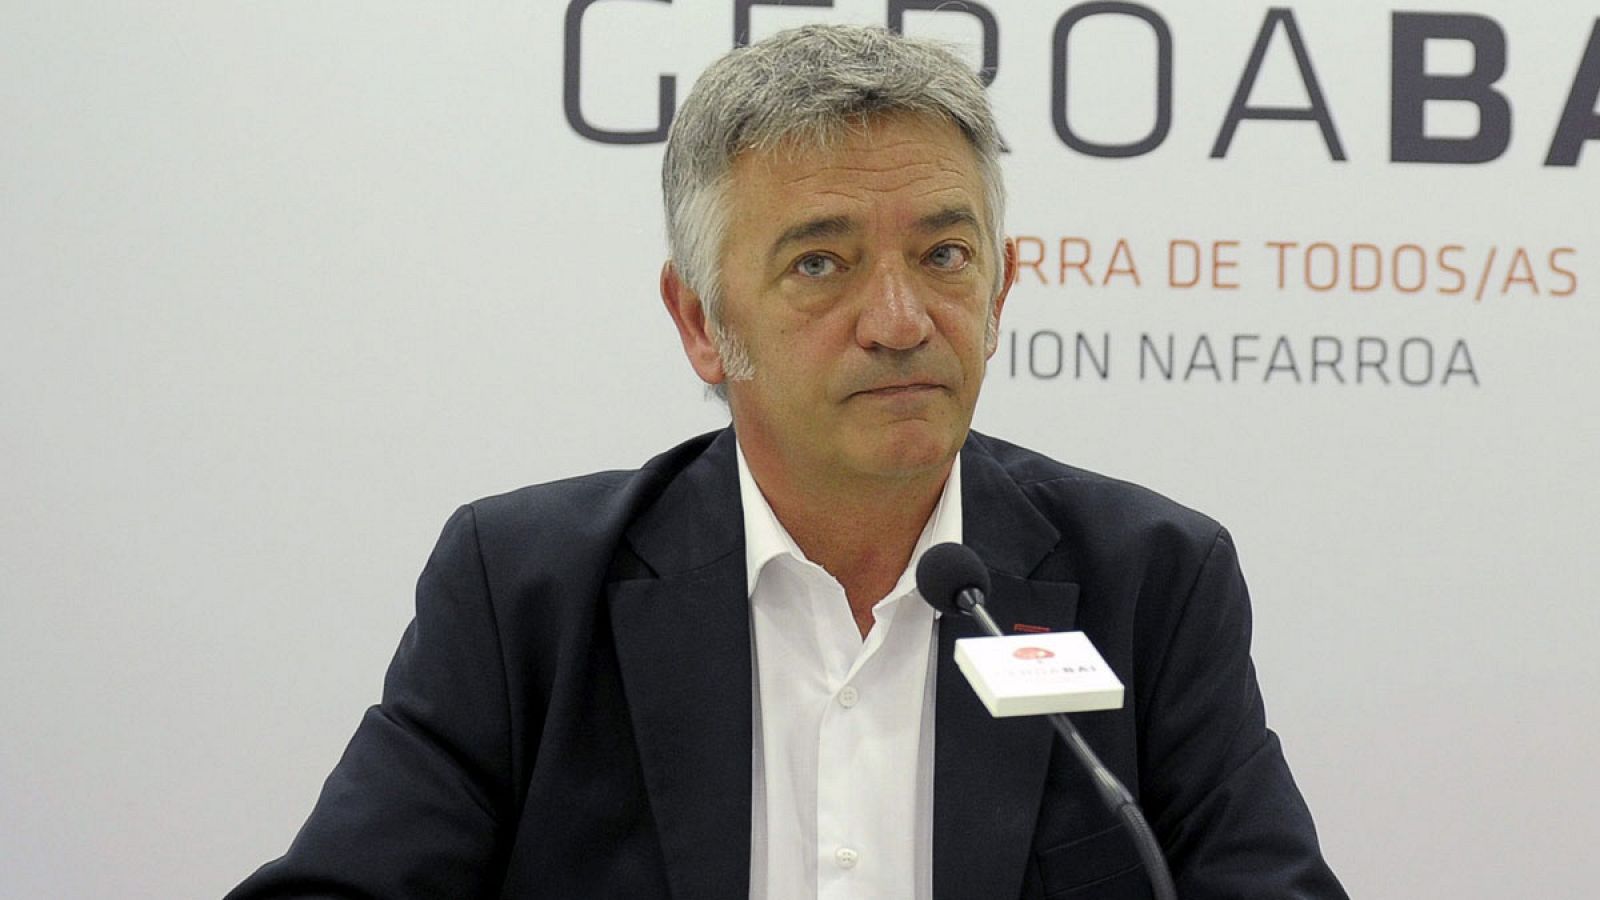 El candidato de Geroa Bai a la presidencia del Gobierno, Koldo Martínez